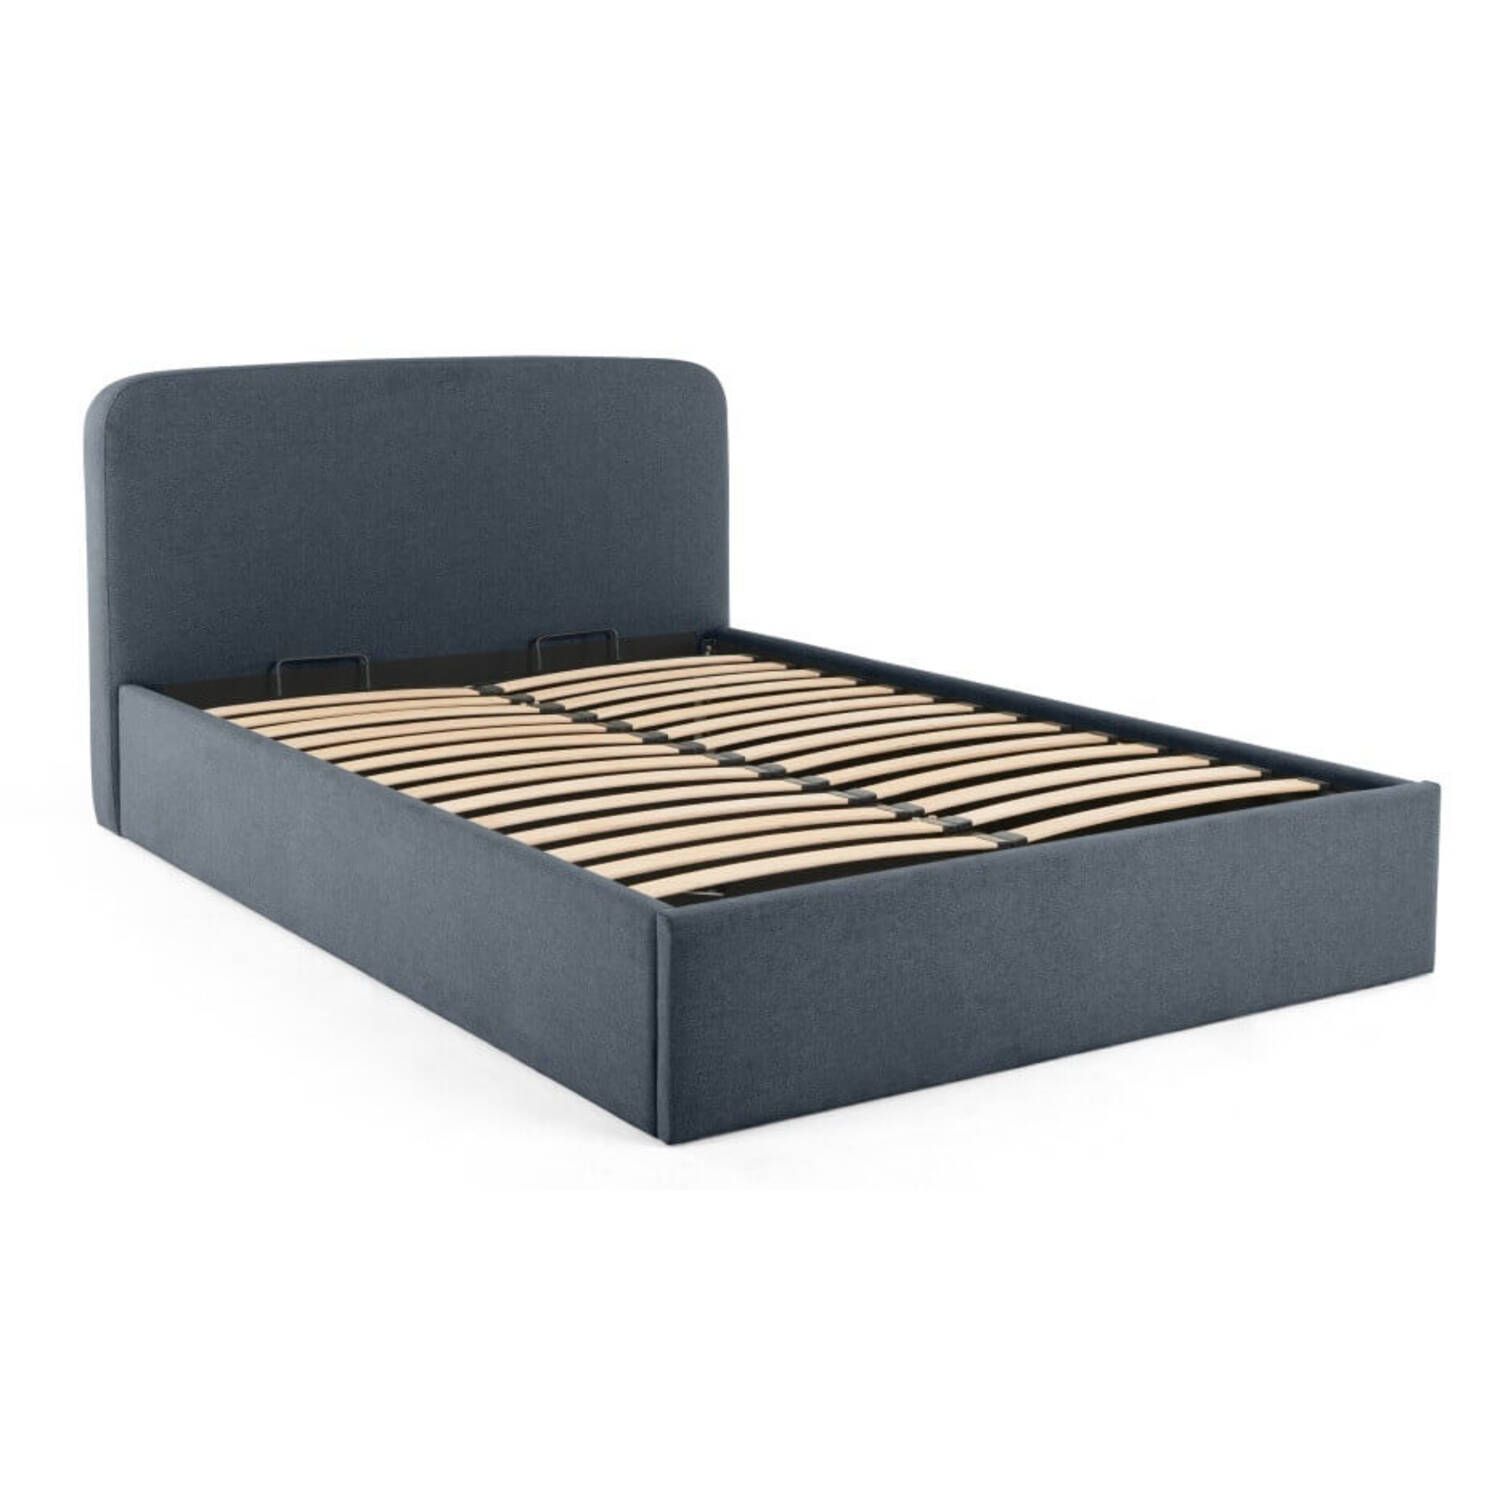 Кровать Besley с подъемным механизмом, синяя